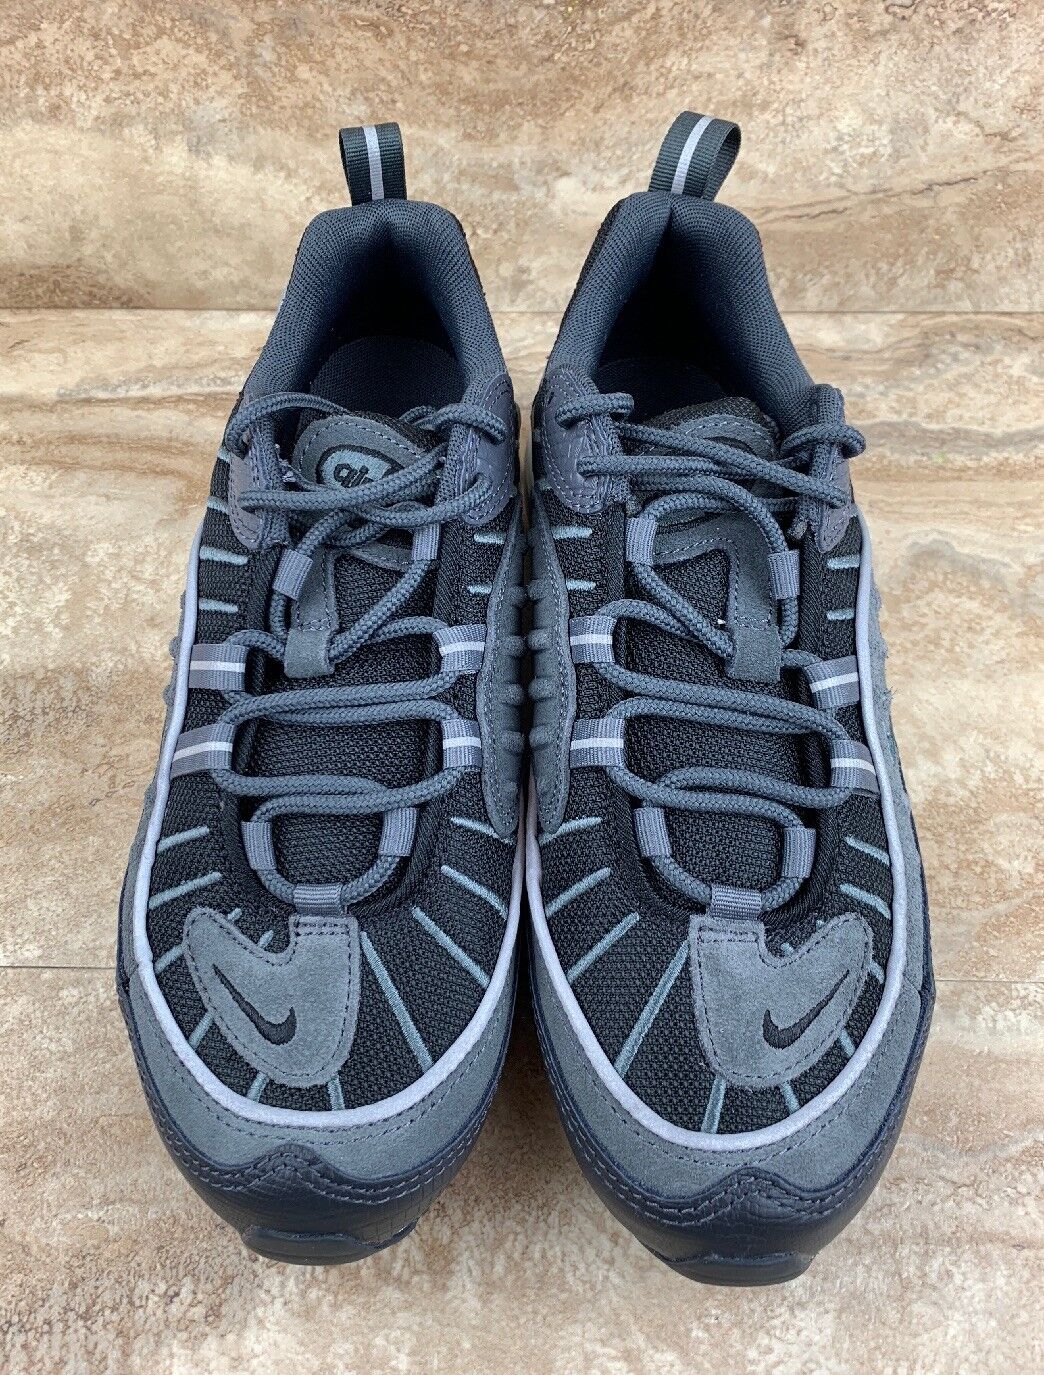 Educación corto Fuera de borda Nike Air Max 98 SE Men's Shoes Black Anthracite Grey Dark Grey | eBay